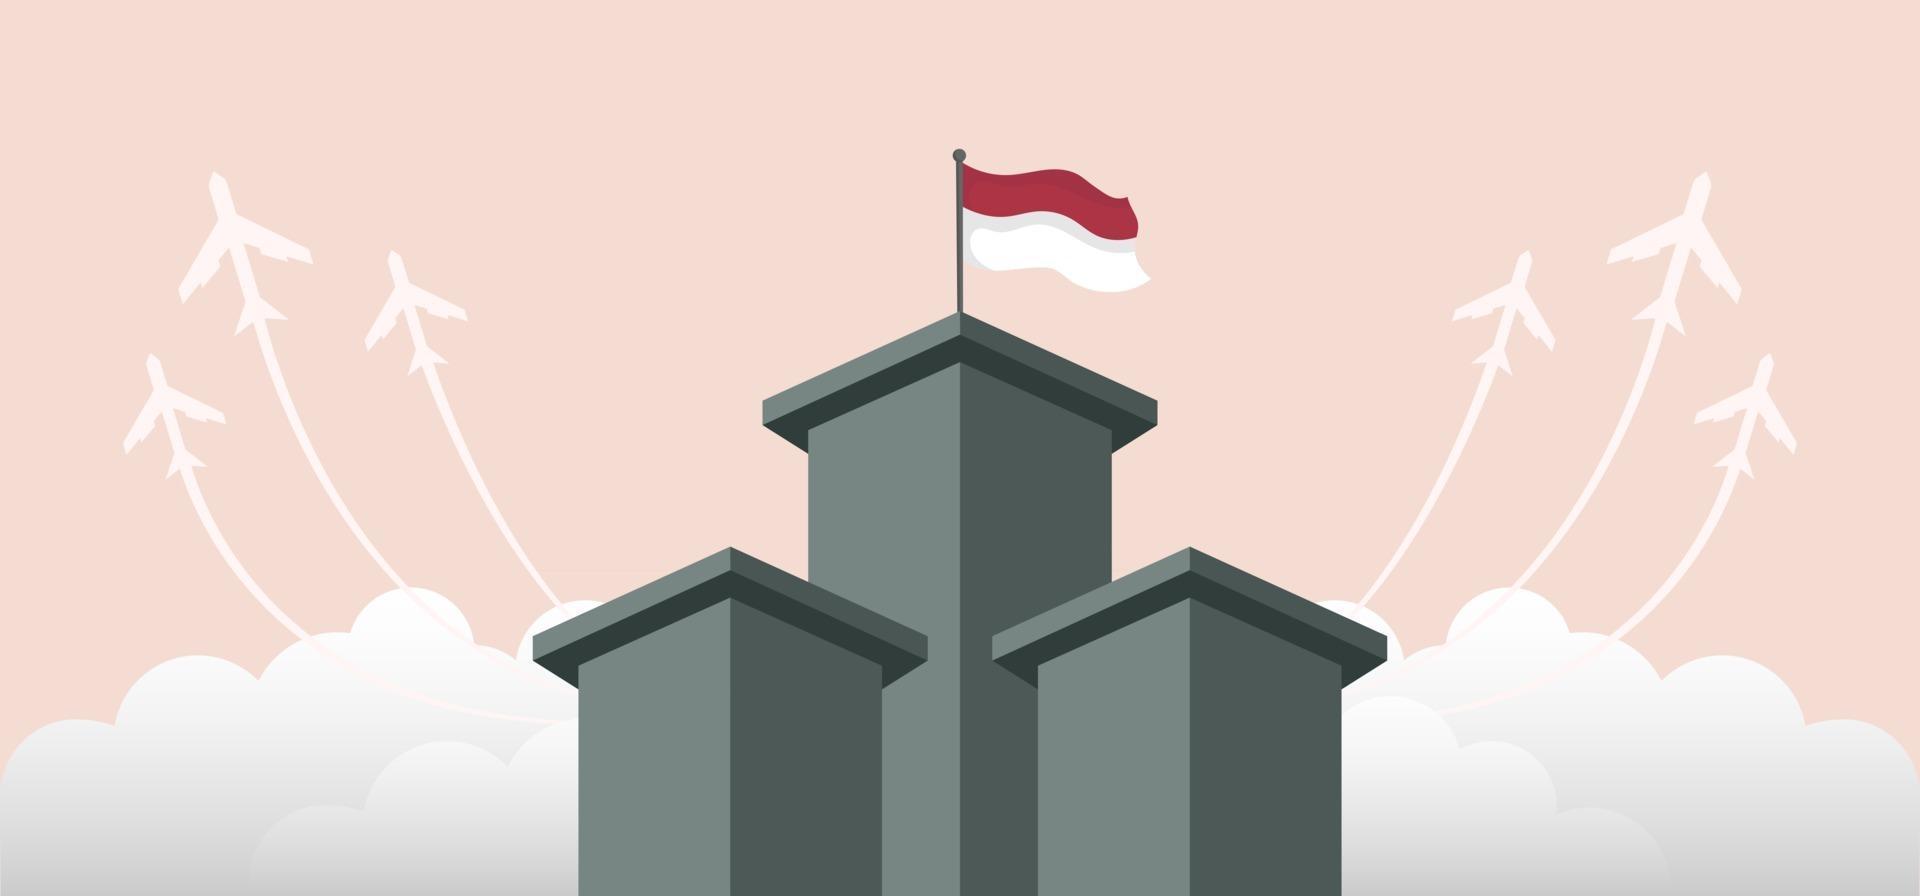 Indonesia independence day landscape banner design. vector